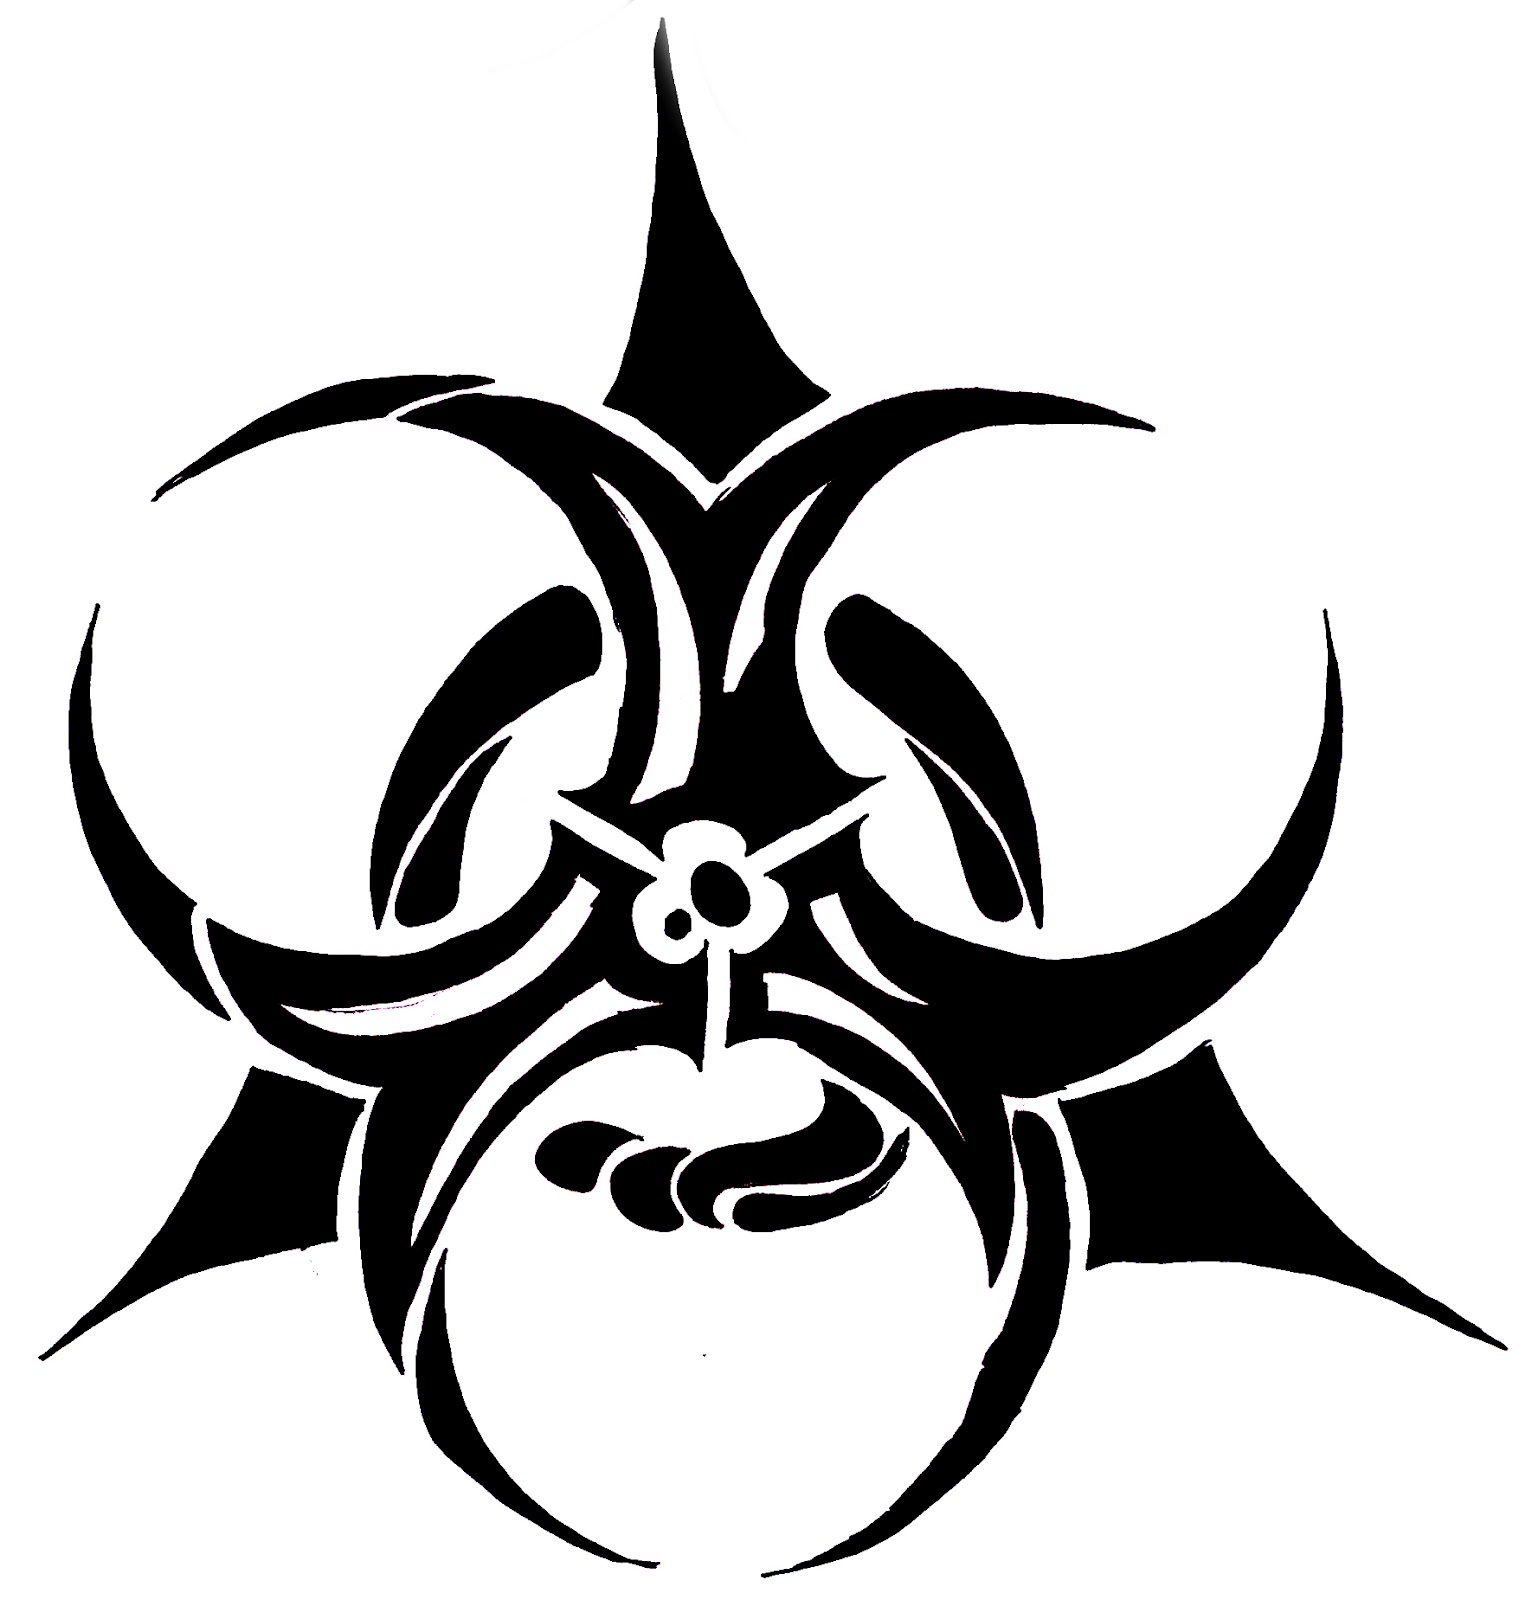 Elegant Biohazard Symbol Tattoo | Tattoomagz.com › Tattoo Designs /  Ink-Works Gallery › Tattoo Designs / Ink… | Biohazard symbol, Biological  hazard, Biohazard sign